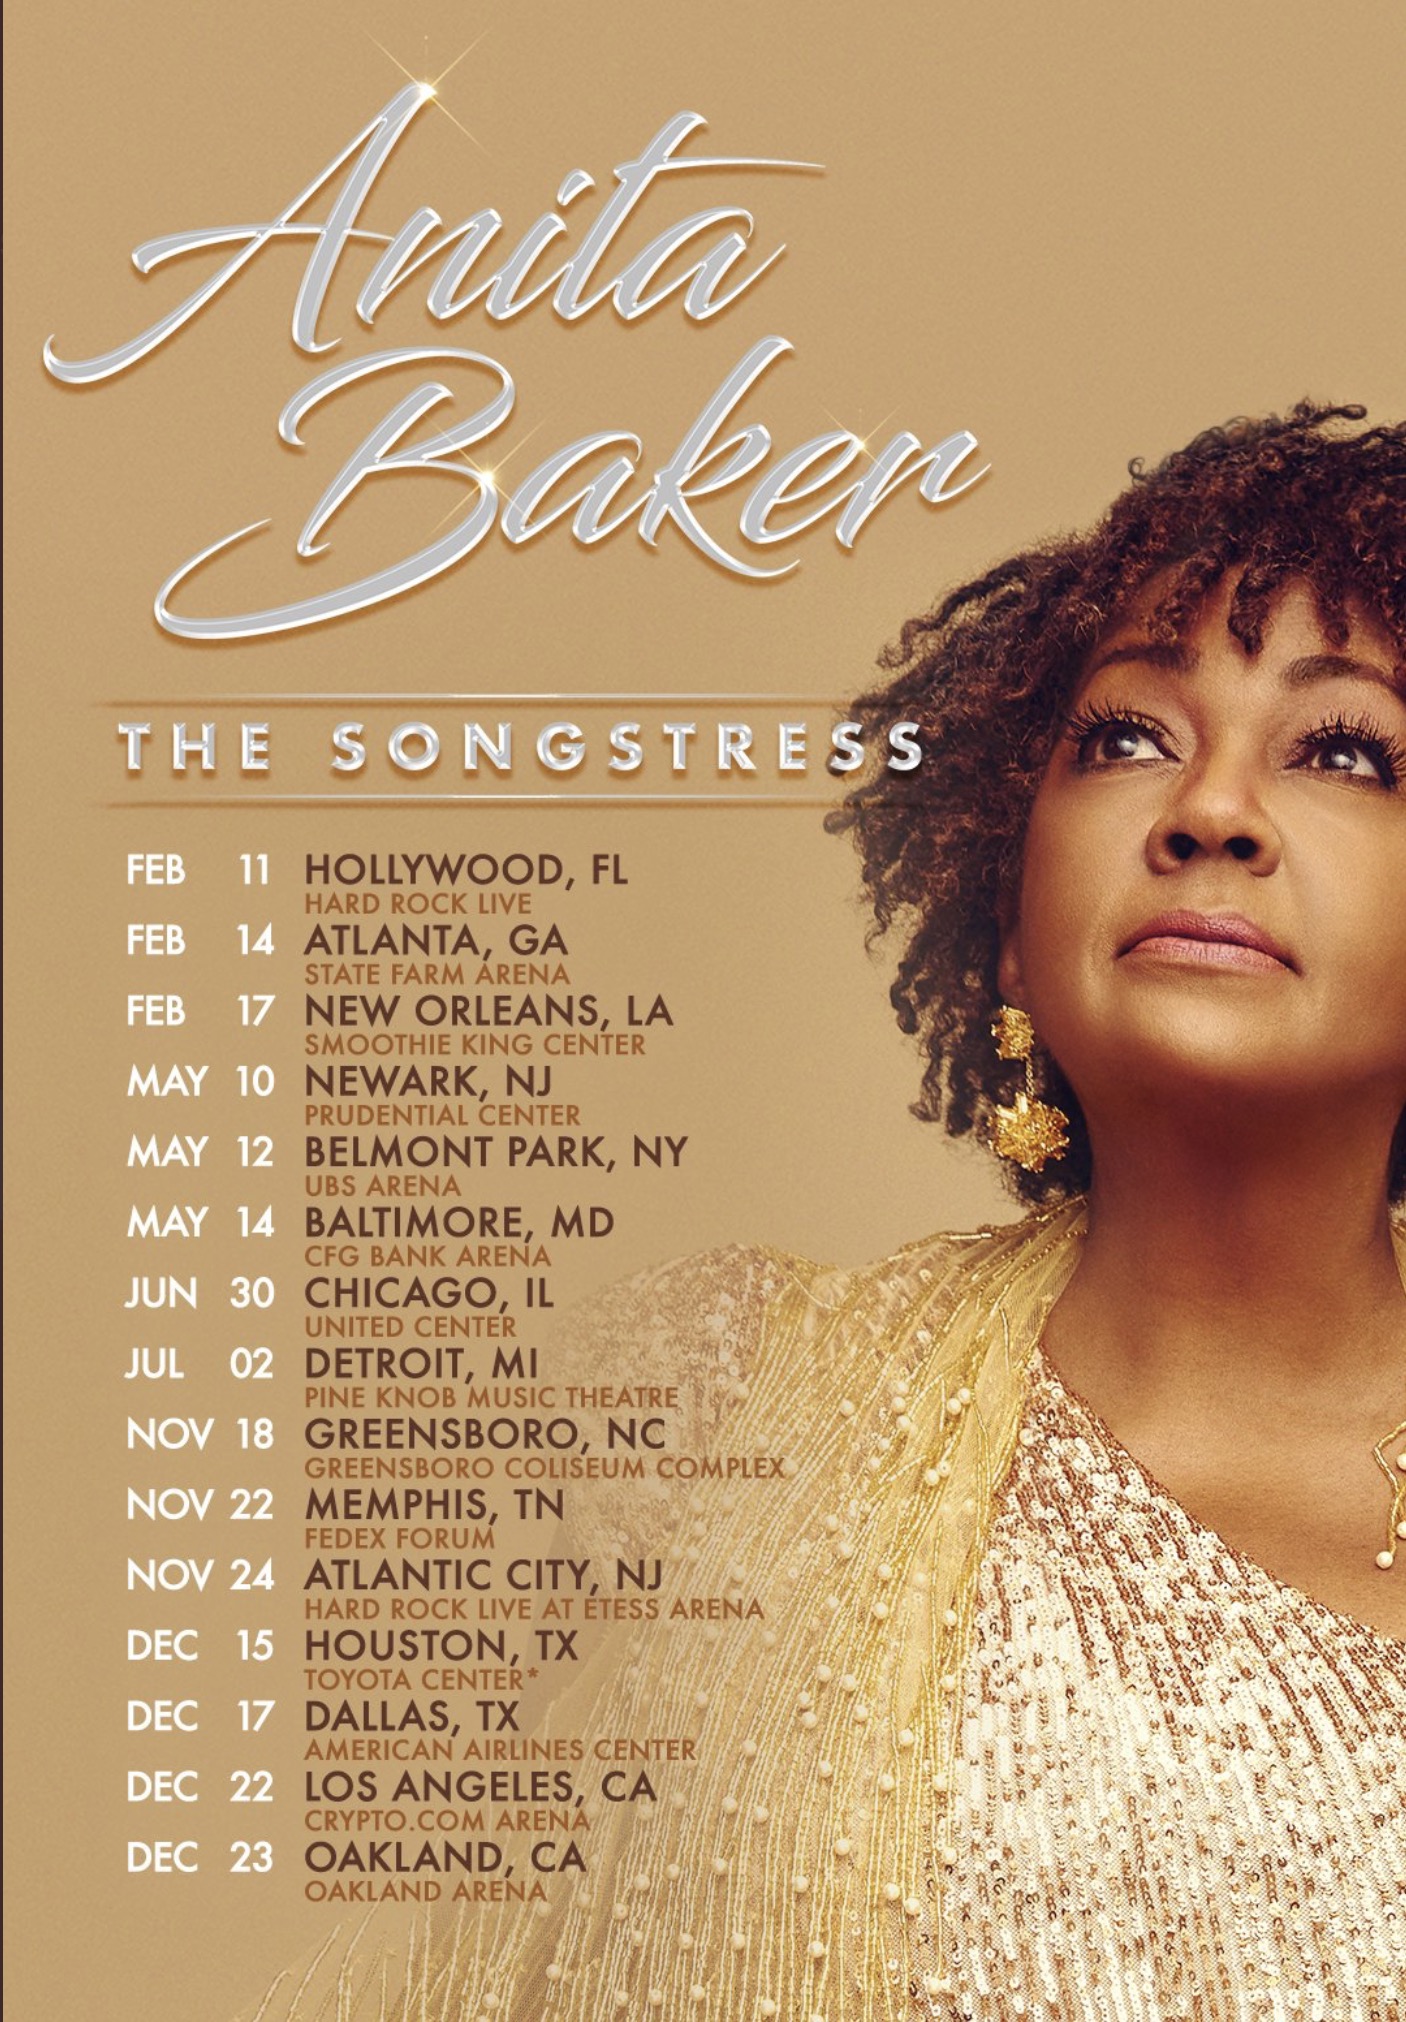 Anita Baker 'The Songstress' Tour 2023